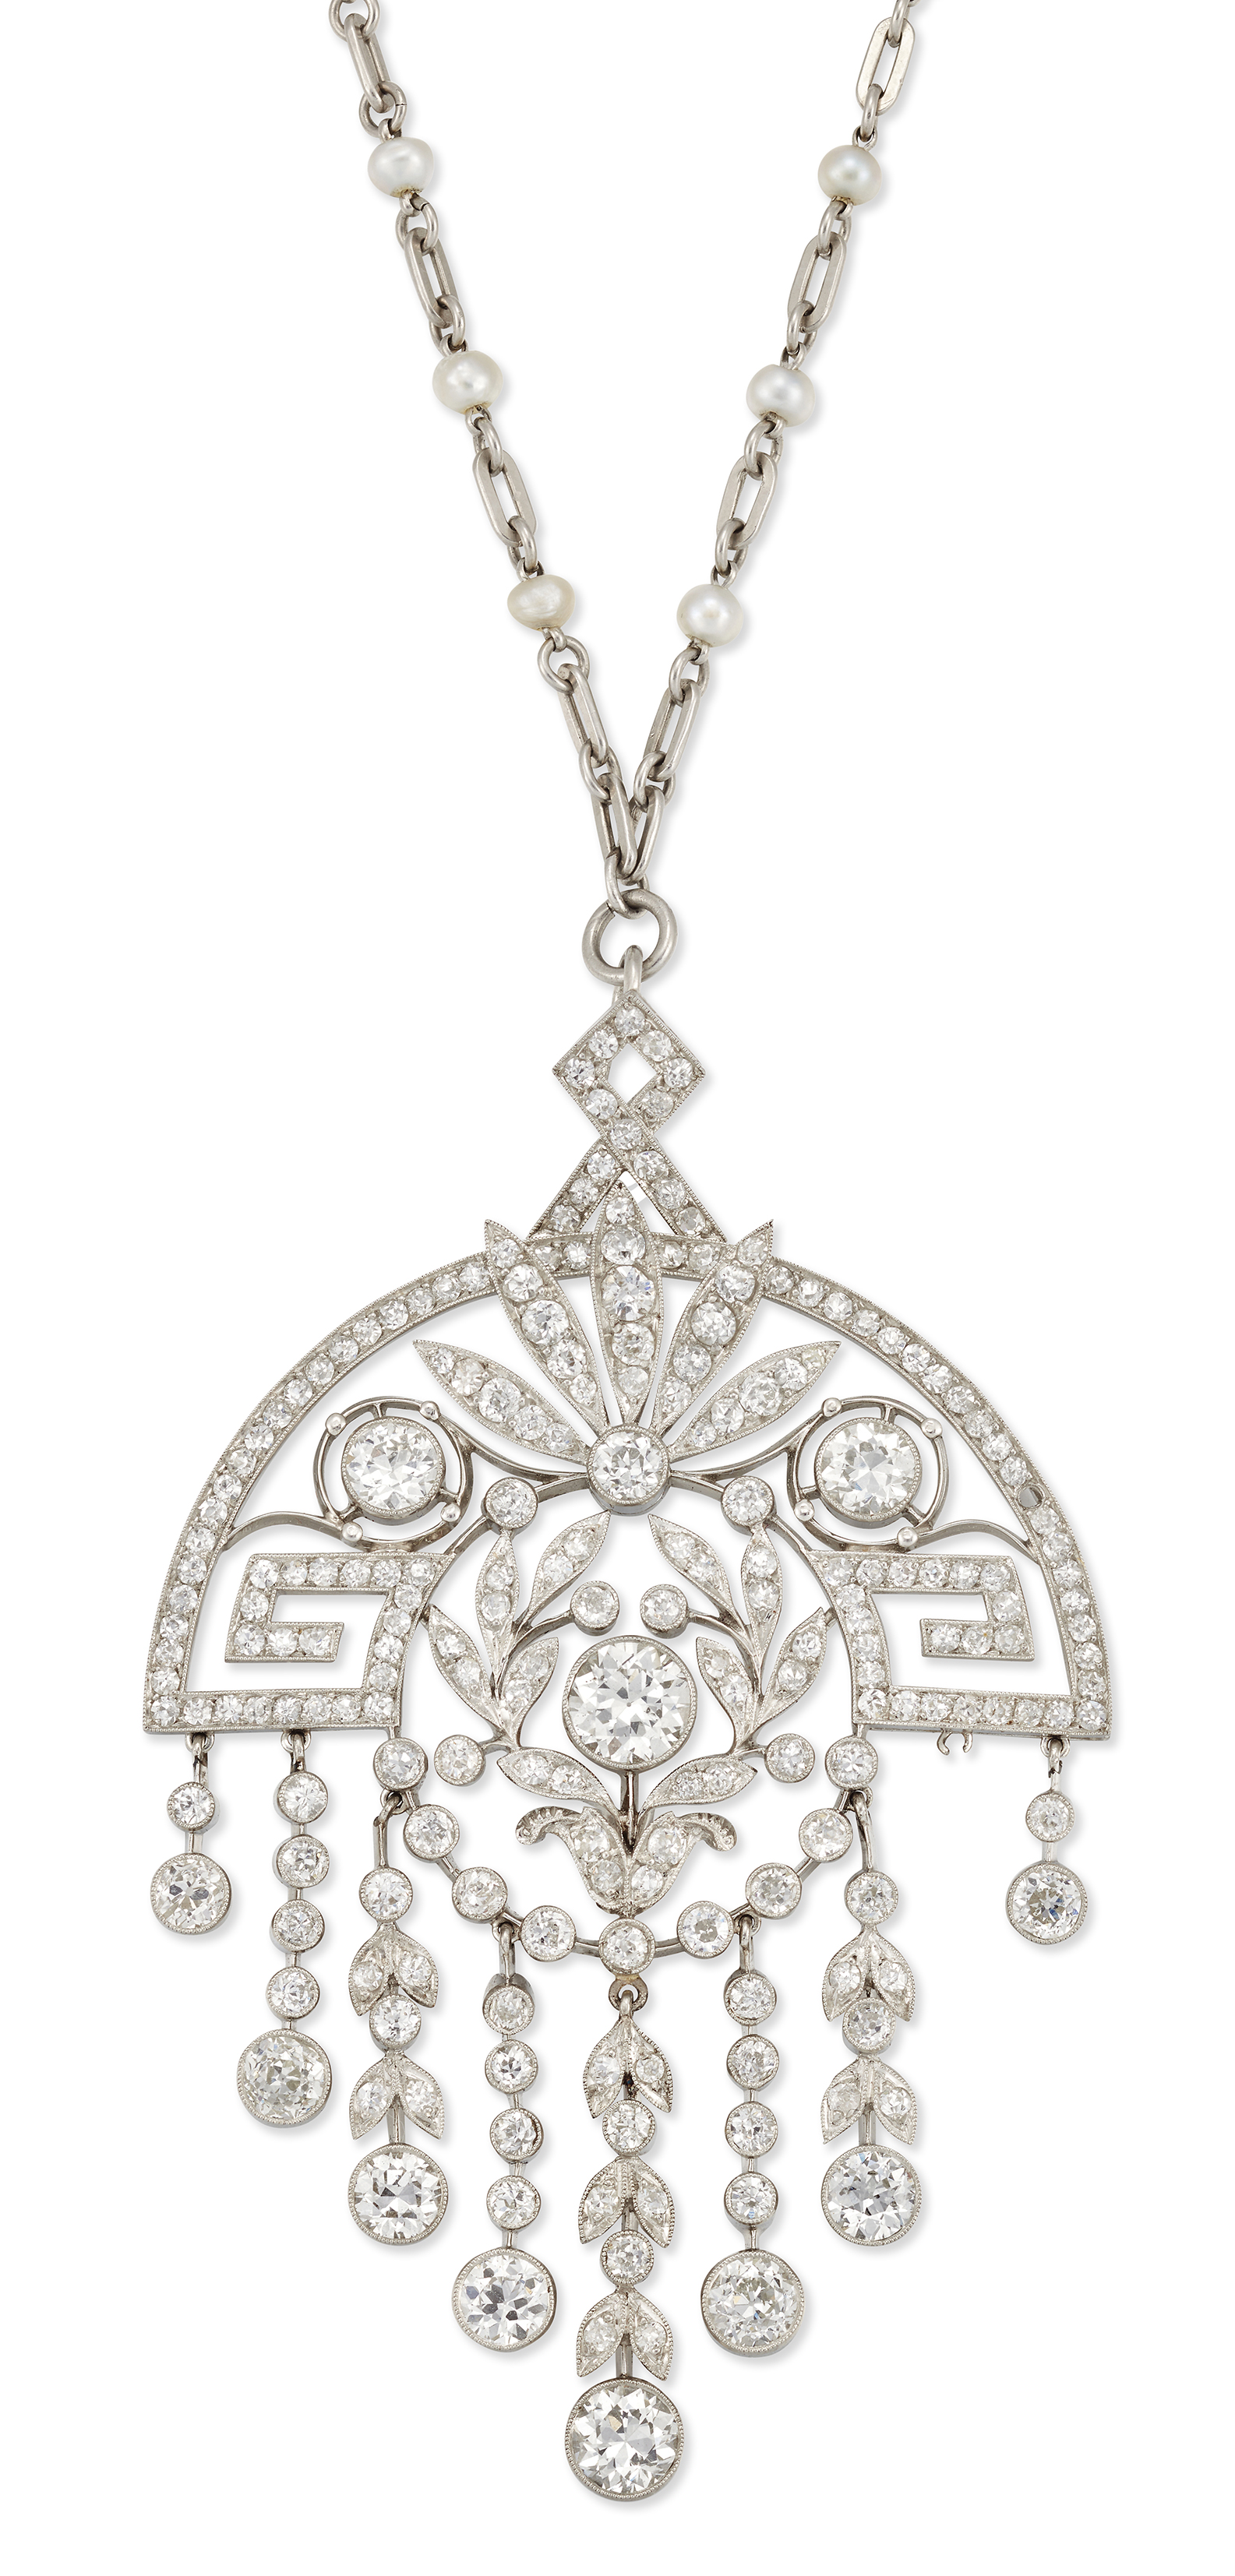 A Belle Époque platinum and diamond brooch/pendant,